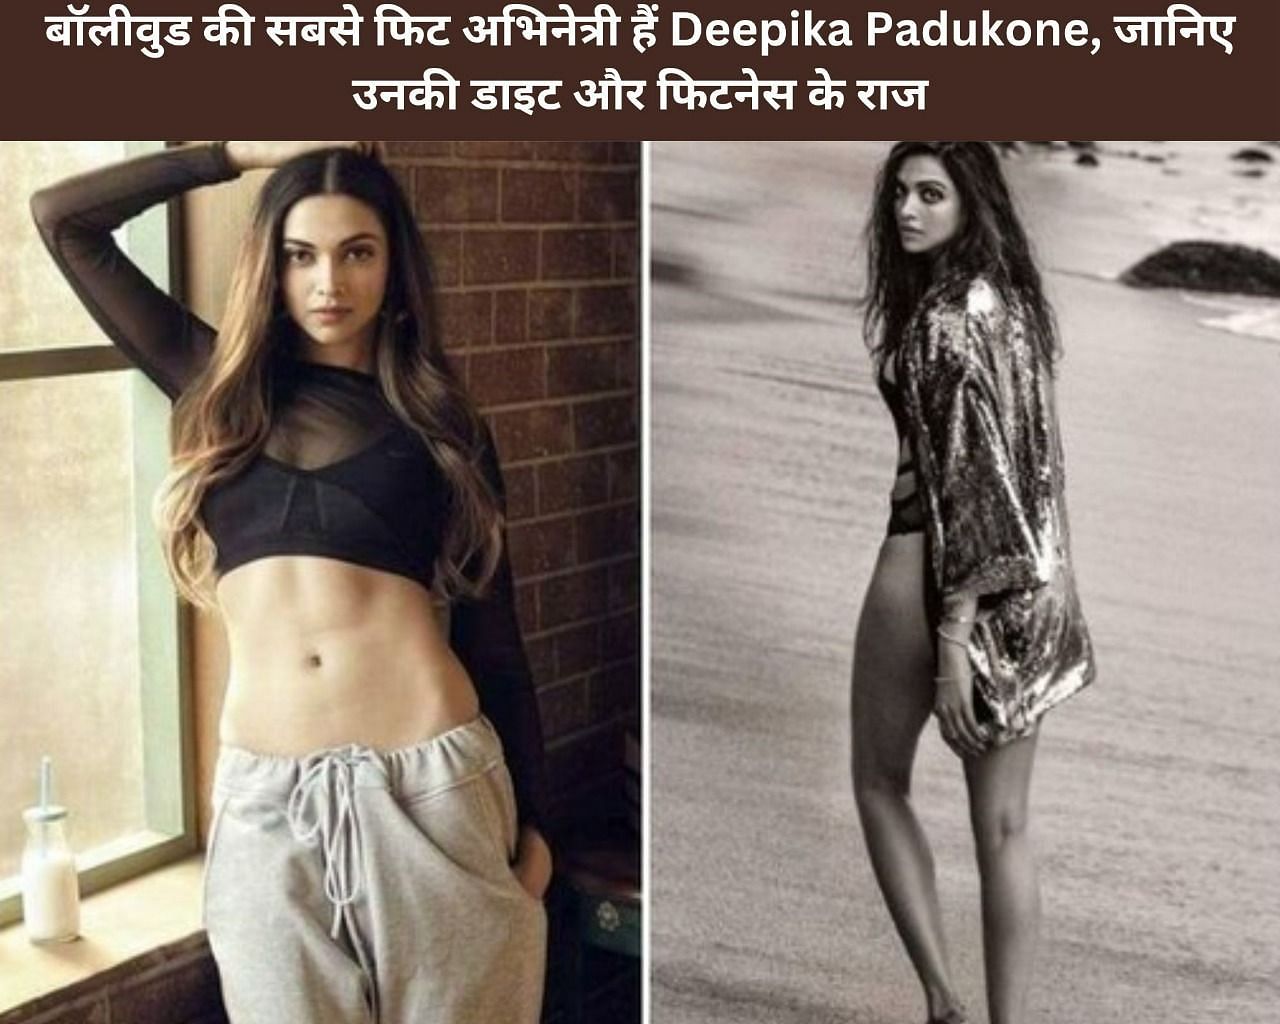 बॉलीवुड की सबसे फिट अभिनेत्री हैं Deepika Padukone, जानिए उनकी डाइट और फिटनेस के राज (फोटो - sportskeedaहिन्दी)